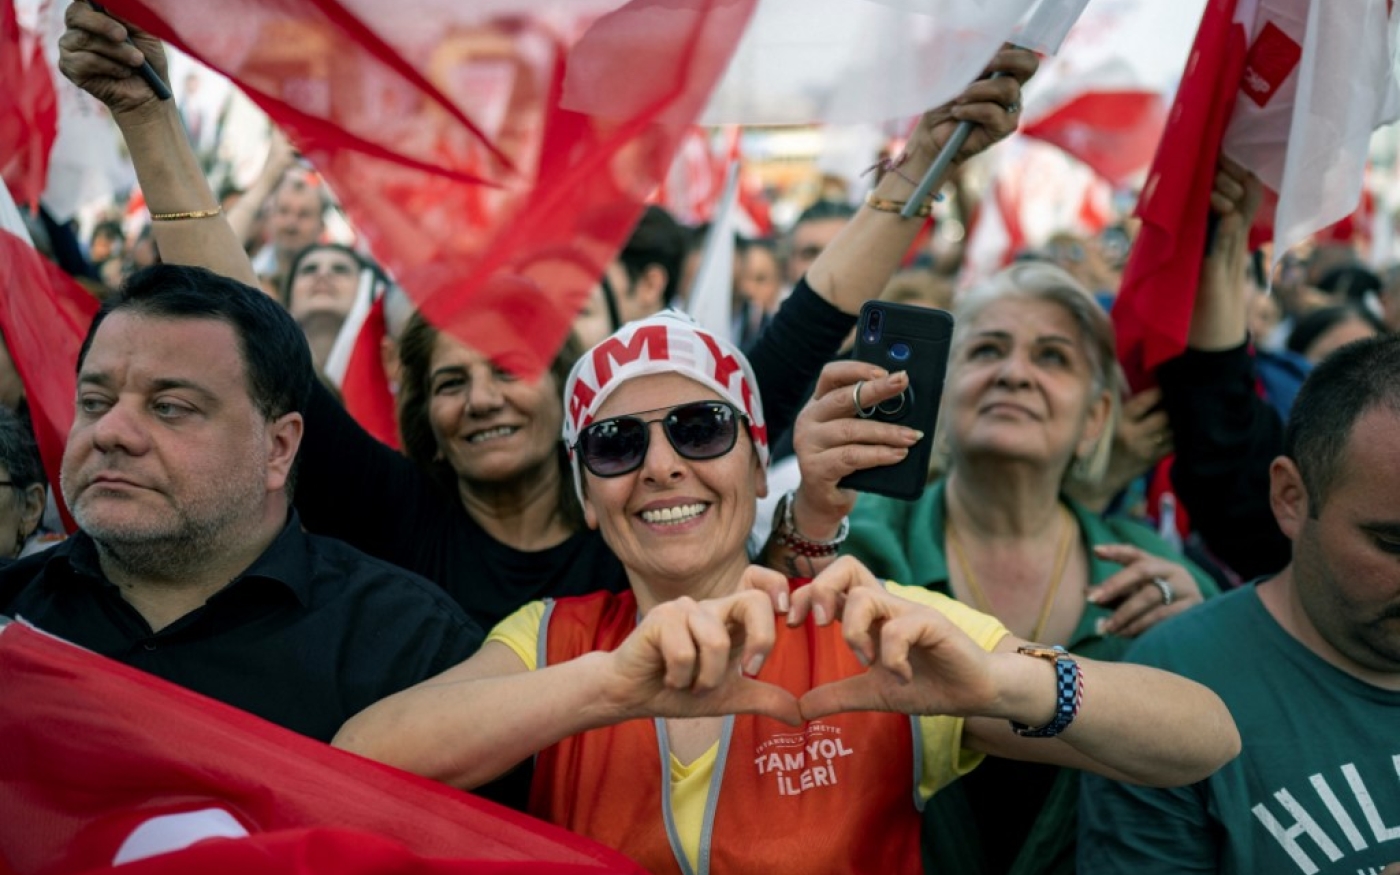 Des partisans brandissent des drapeaux alors qu’ils se rassemblent pour écouter le maire d’Istanbul du Parti républicain du peuple (CHP), principal parti d’opposition de centre-gauche, prononcer un discours à la veille des élections municipales, à Istanbul, le 30 mars 2024 (AFP)